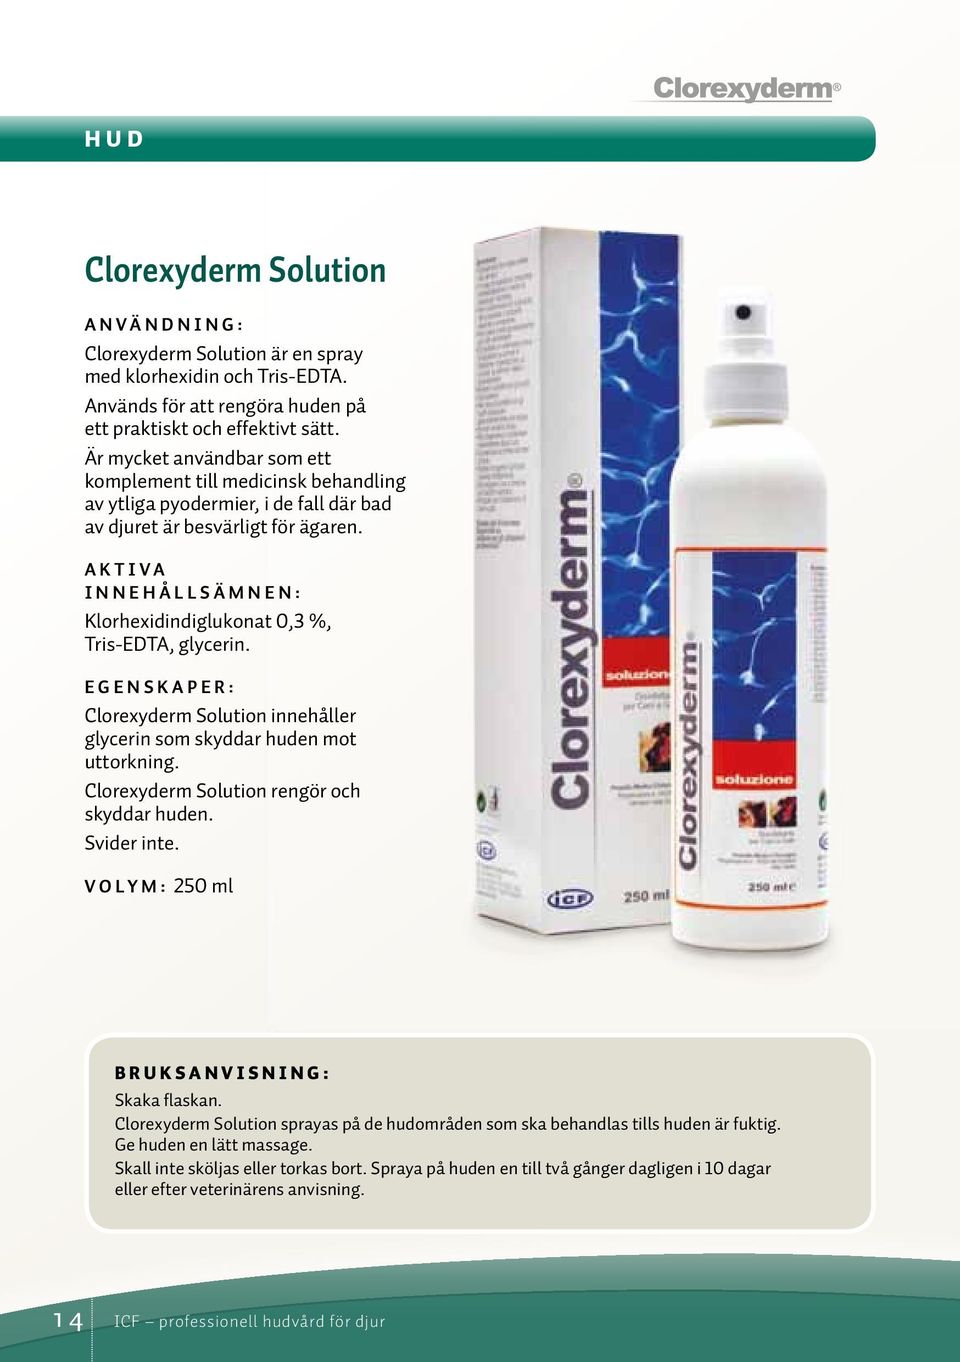 Aktiva innehållsämnen: Klorhexidindiglukonat 0,3 %, Tris-EDTA, glycerin. Clorexyderm Solution innehåller glycerin som skyddar huden mot uttorkning. Clorexyderm Solution rengör och skyddar huden.